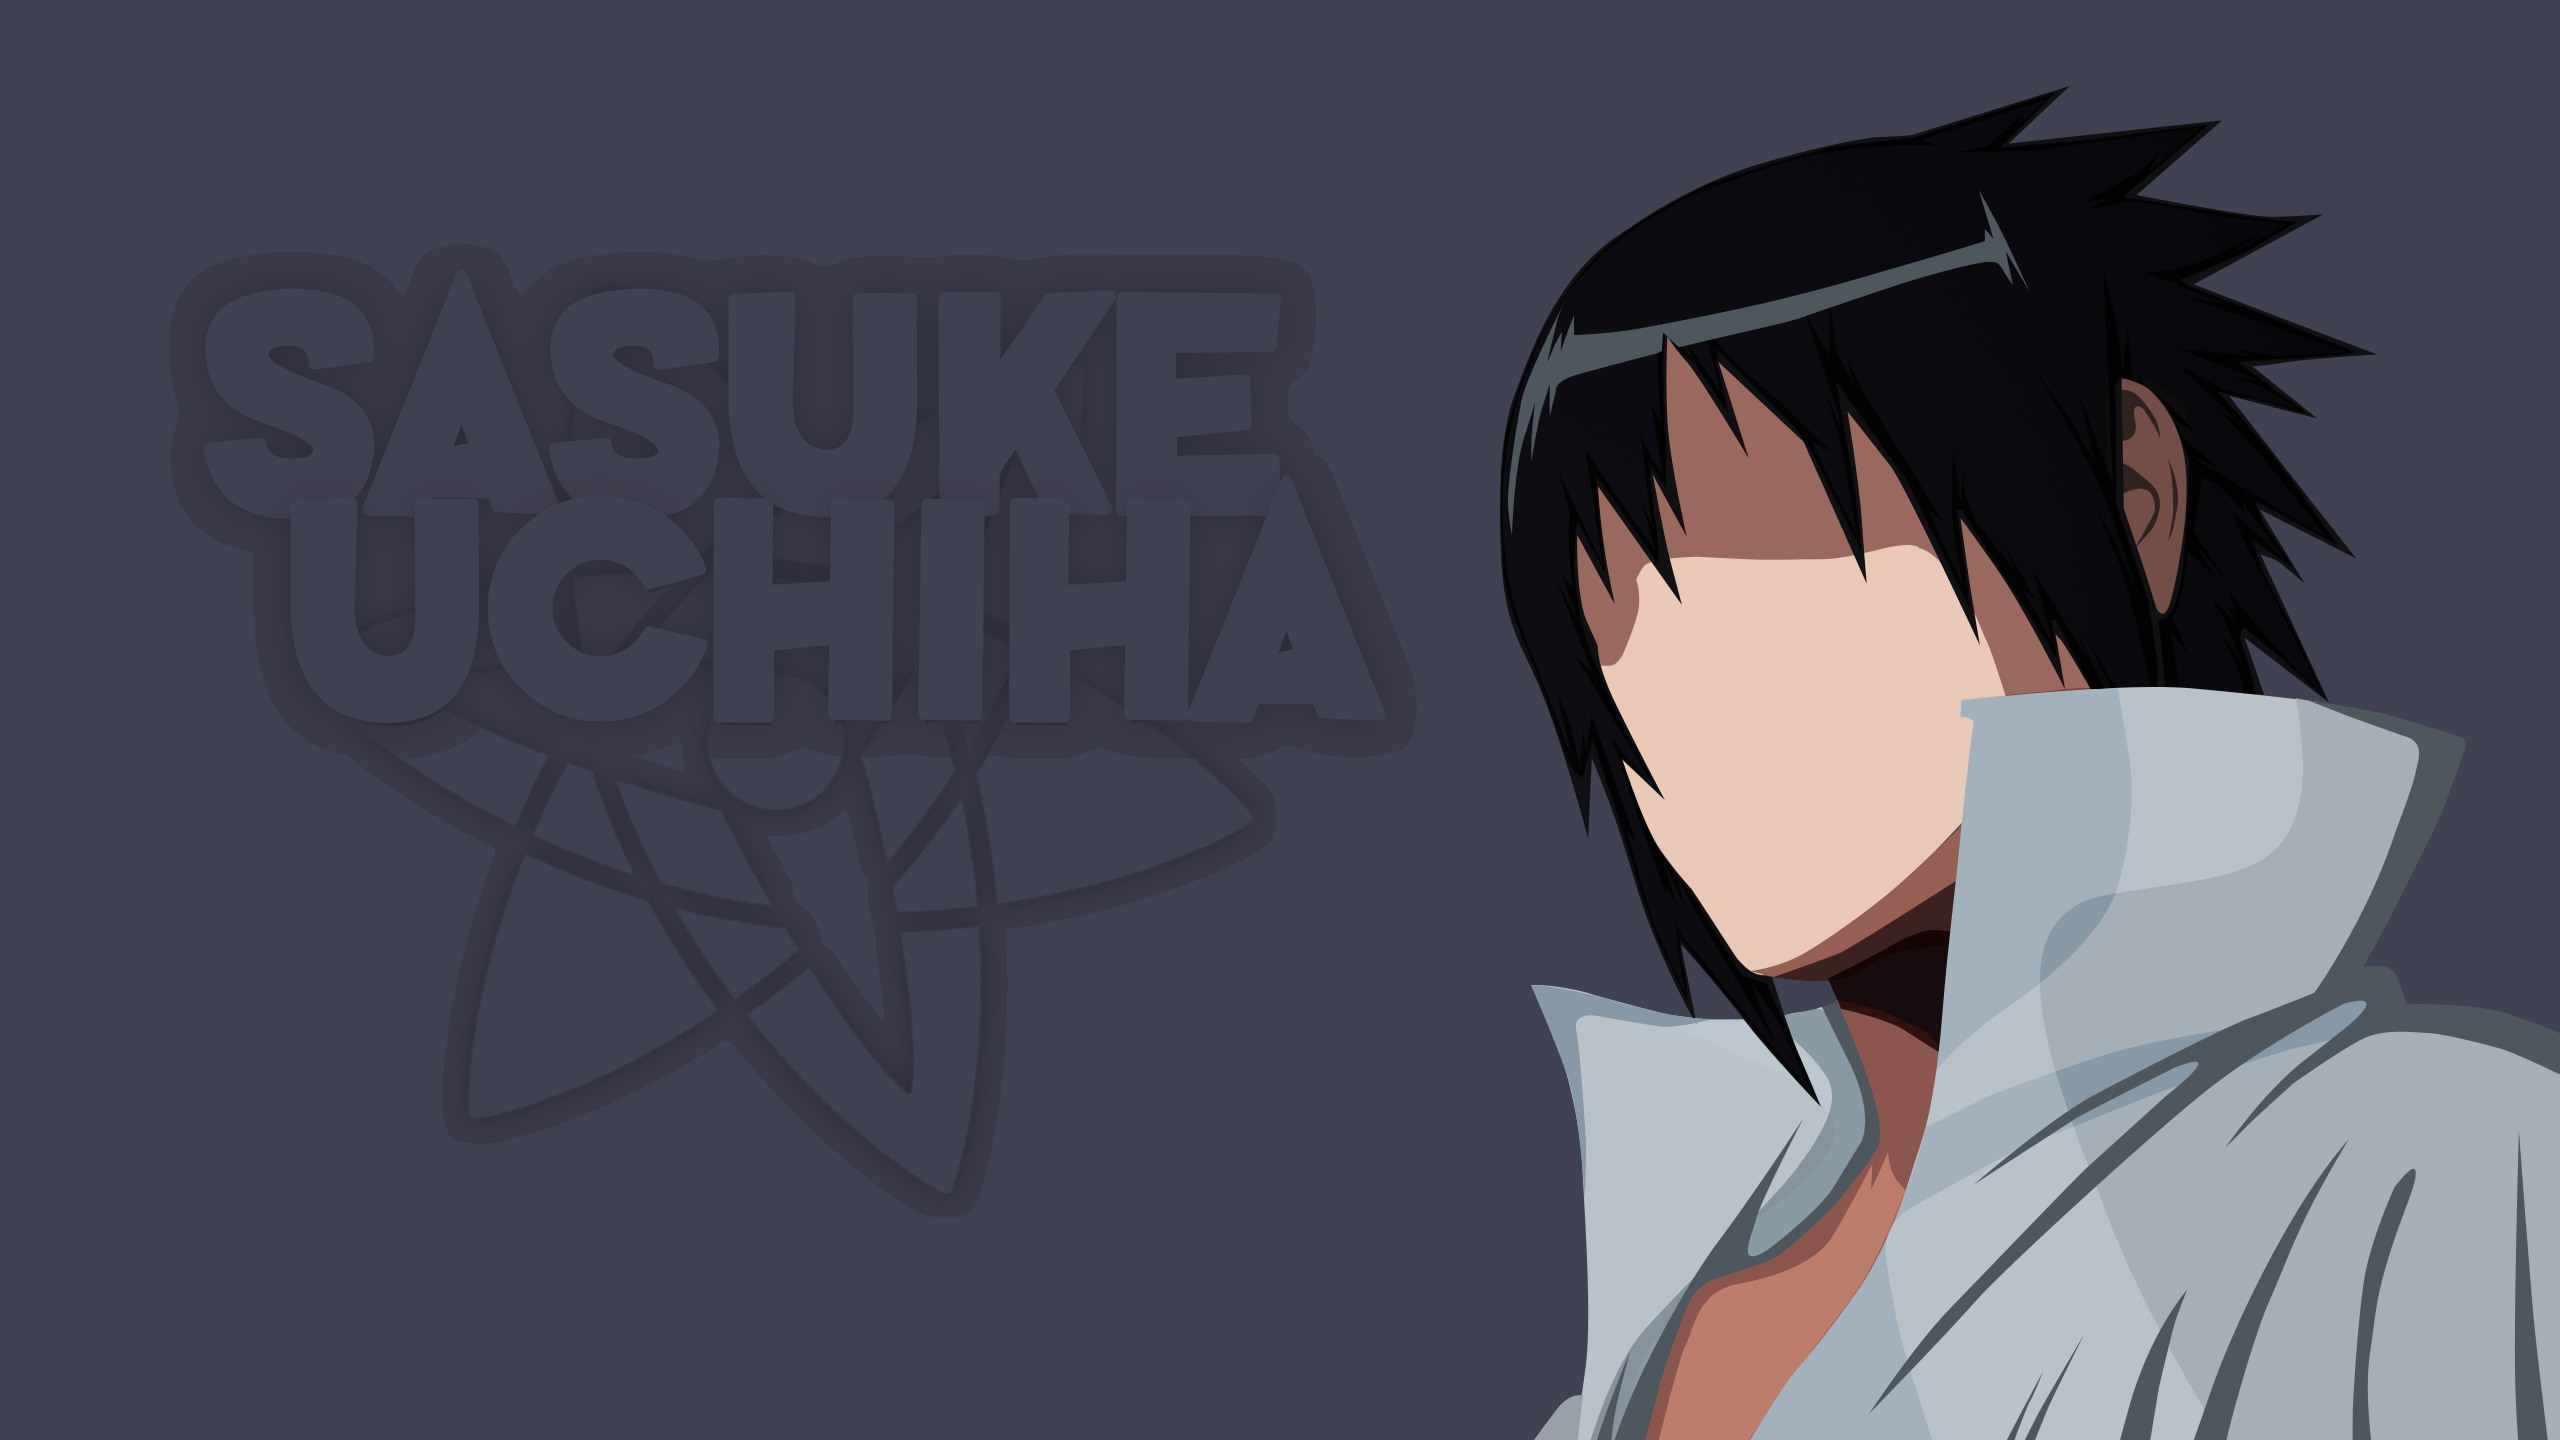 Sasuke Uchiha 2560x1440